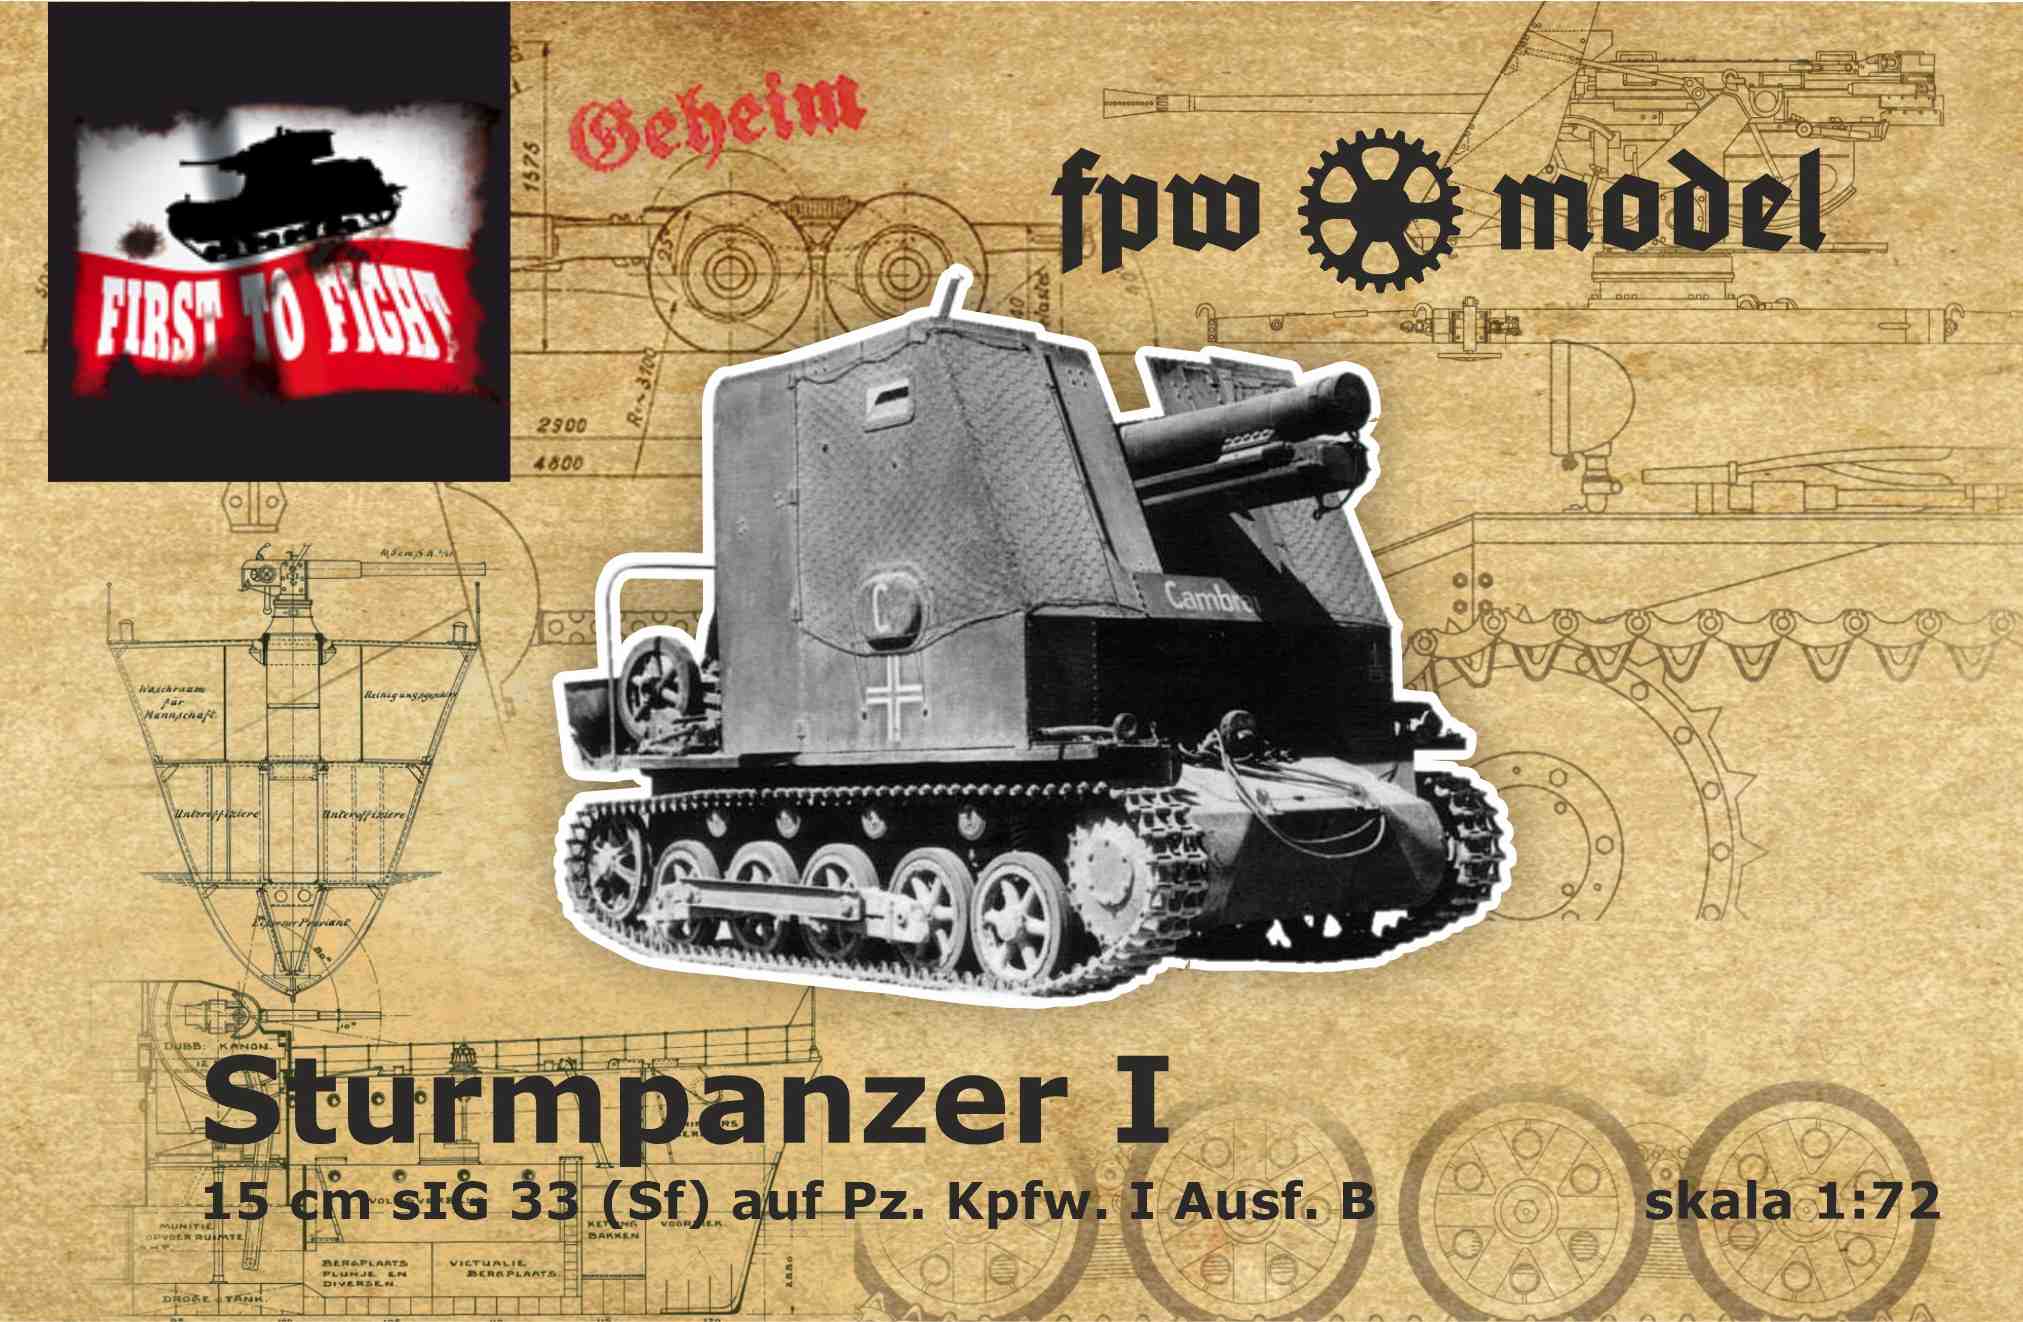 15cm sIG 33 (Sf) auf Pz.Kpfw.I Ausf.B Sturmpanzer I - Click Image to Close